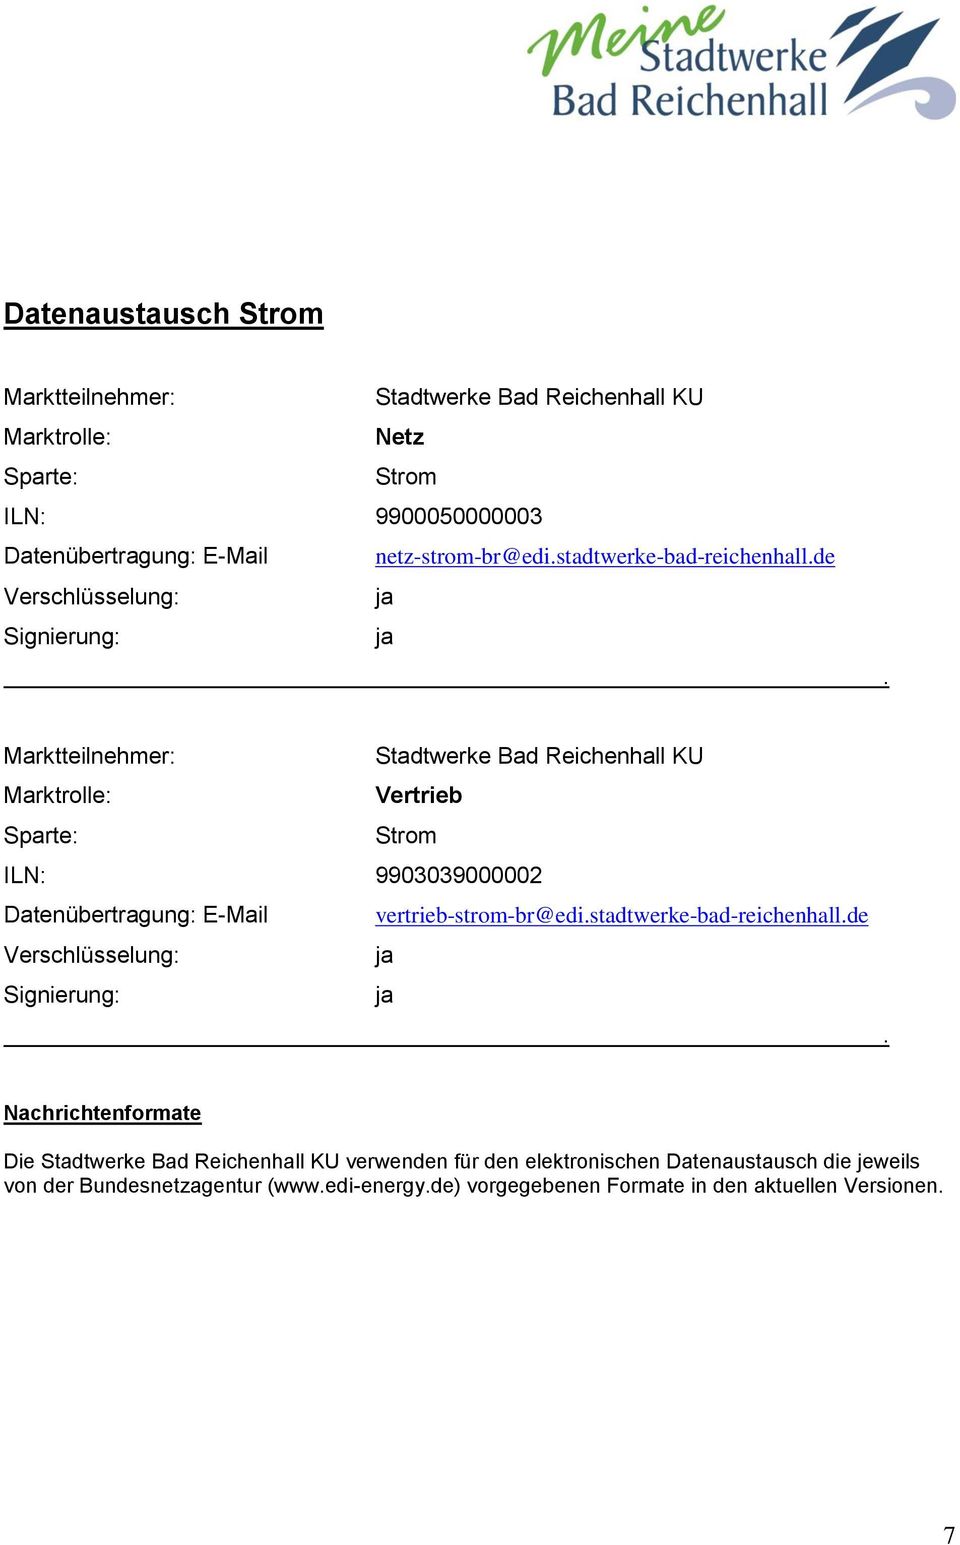 Marktteilnehmer: Stadtwerke Bad Reichenhall KU Marktrolle: Vertrieb Sparte: Strom ILN: 9903039000002 Datenübertragung: E-Mail vertrieb-strom-br@edi.